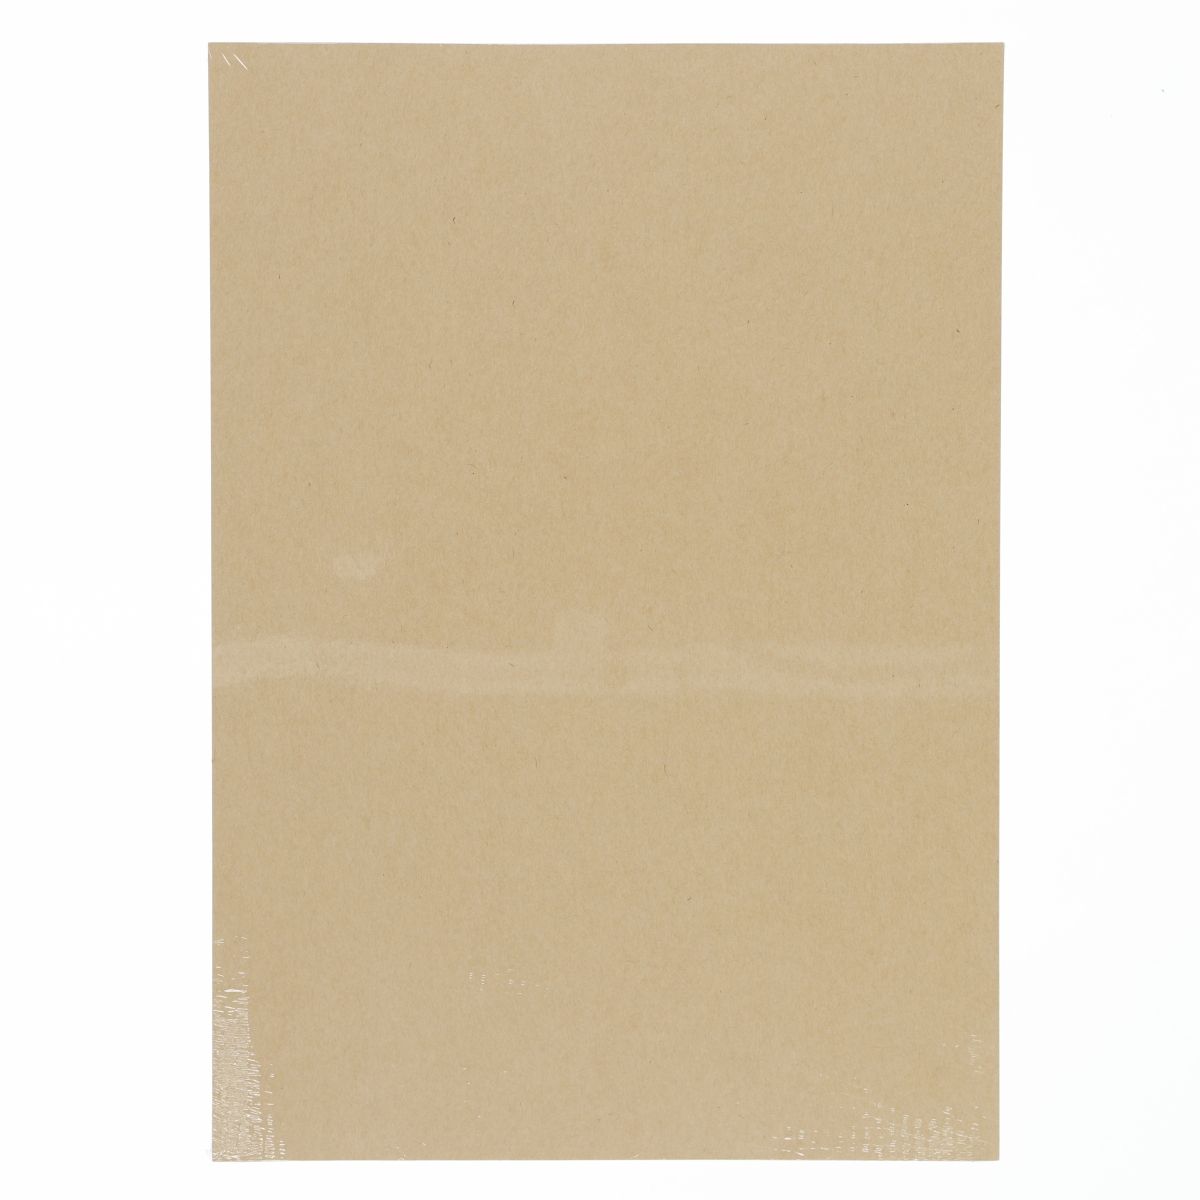 Papier ozdobny (wizytówkowy) nature ciemnobeżowy A3 beżowy 220g Galeria Papieru (207926)